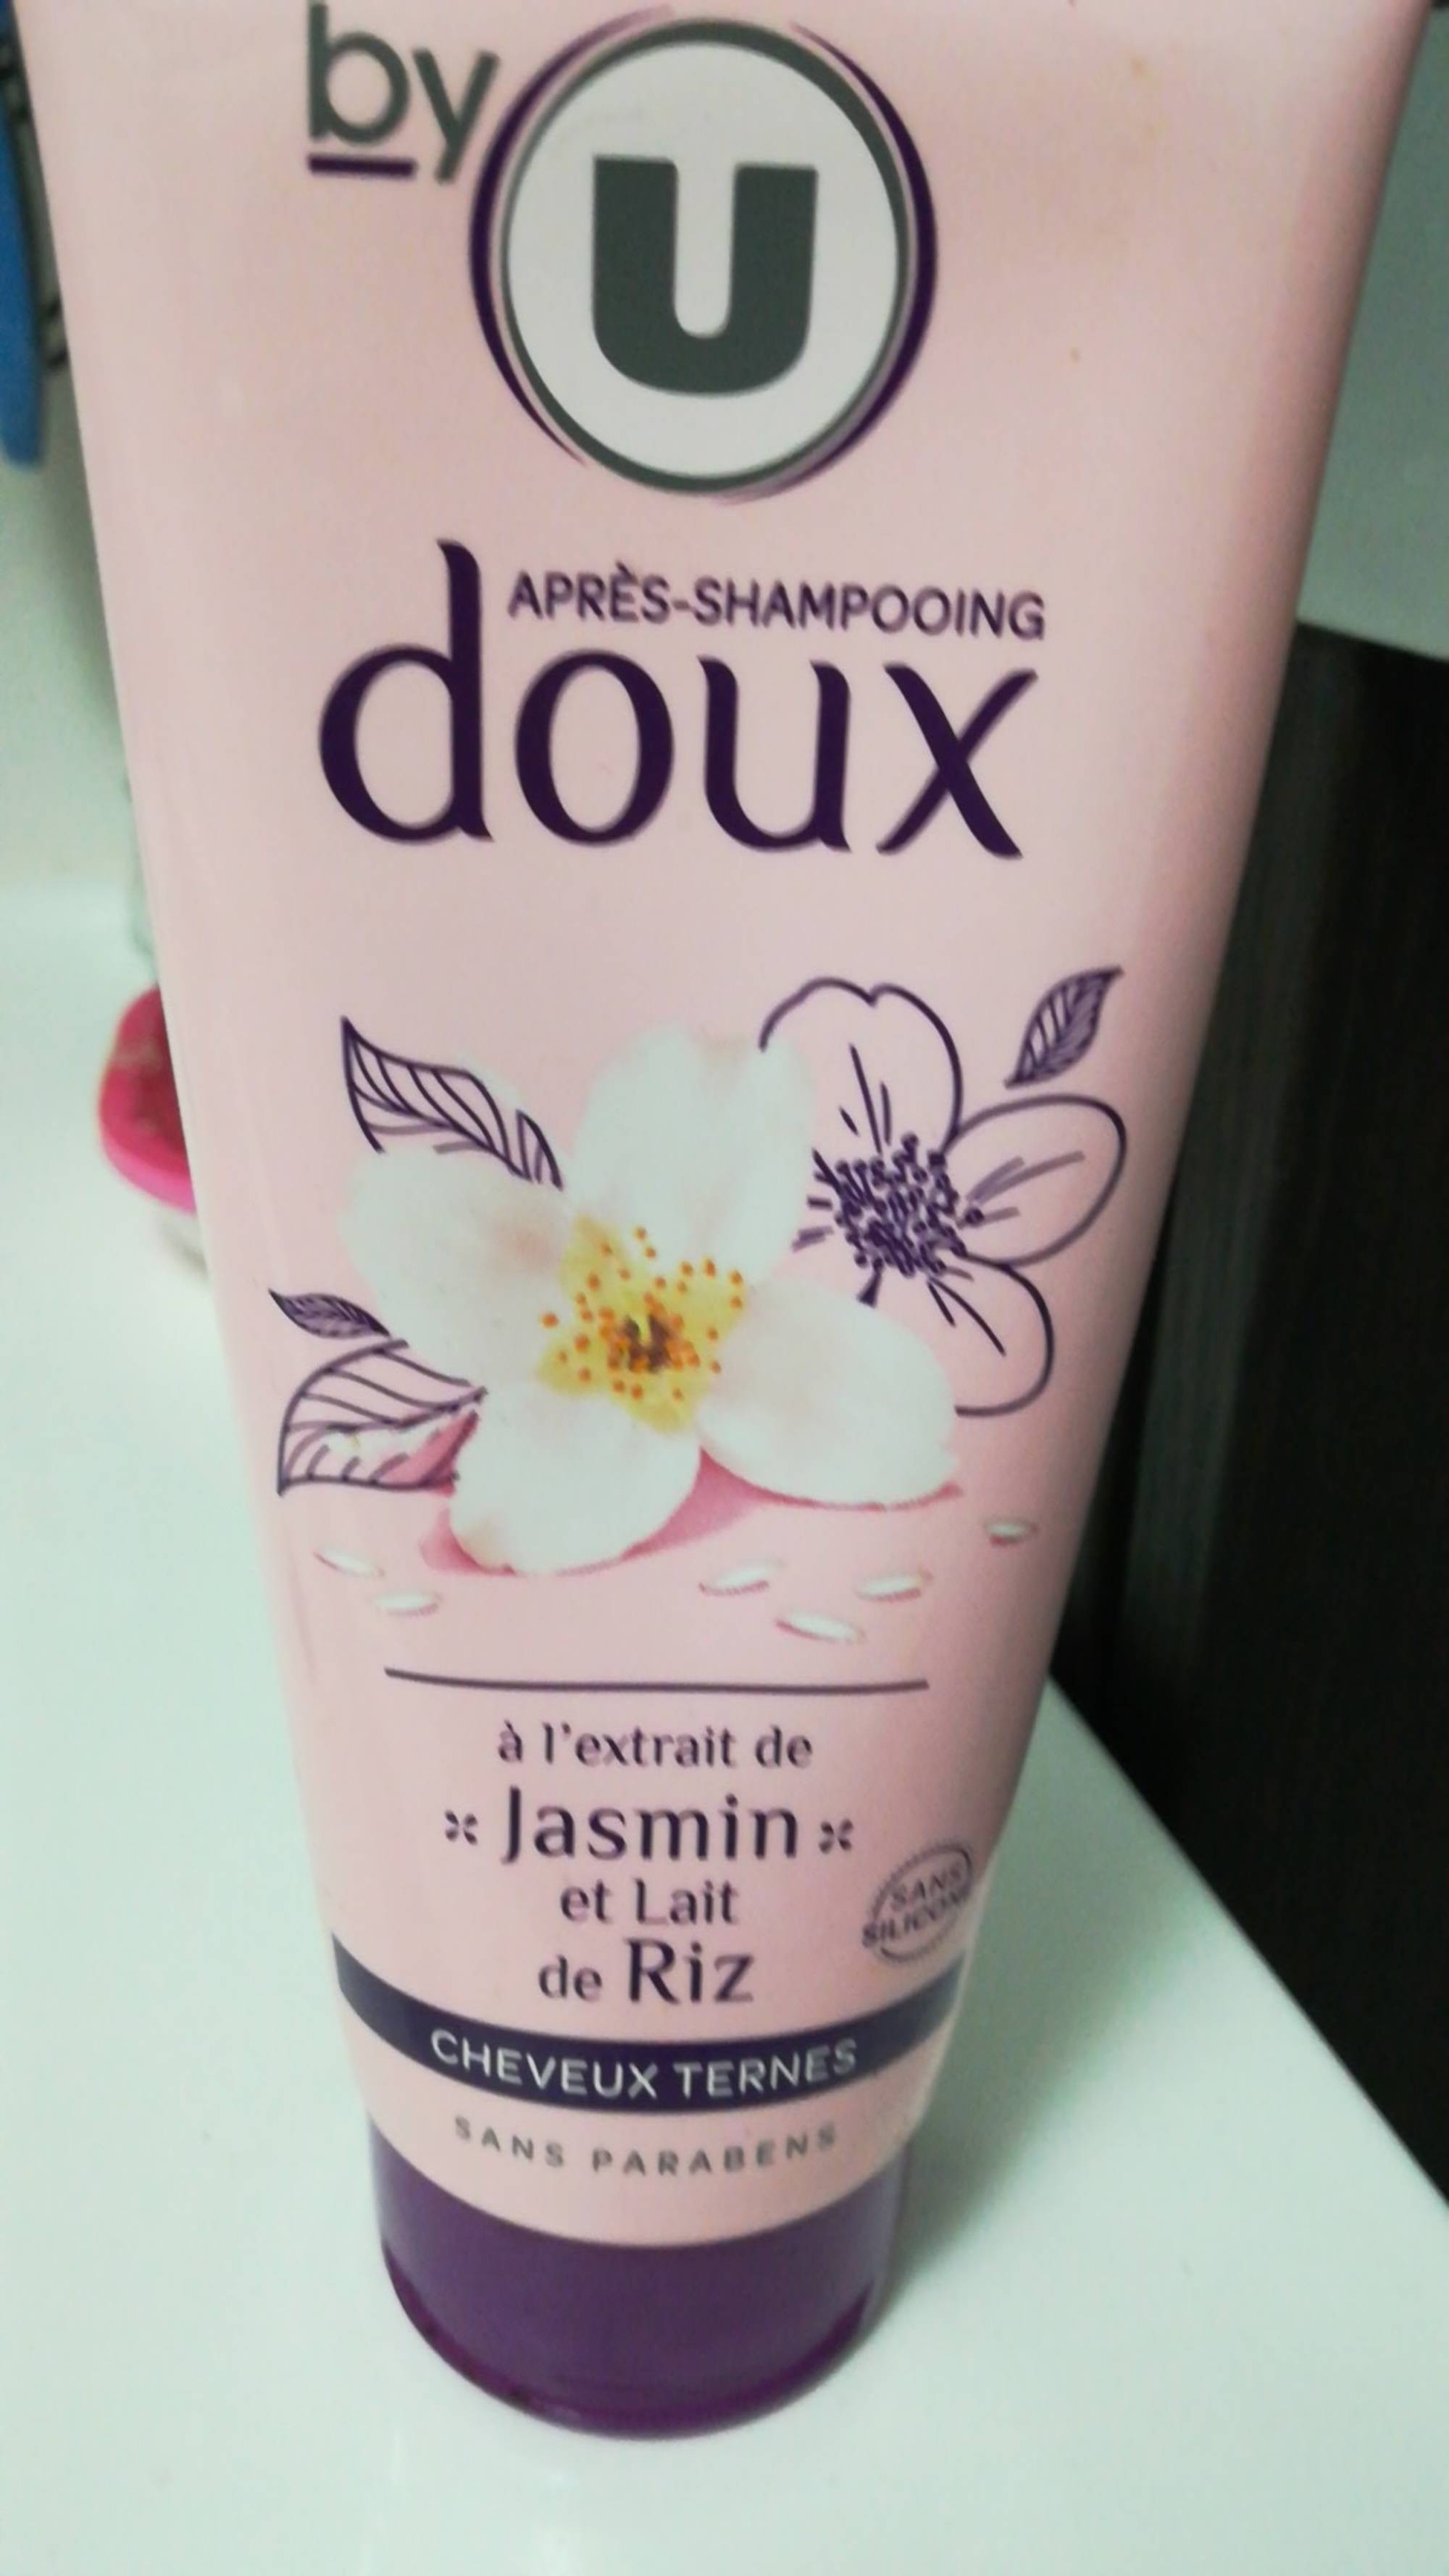 BY U - Après-shampooing doux pour cheveux ternes